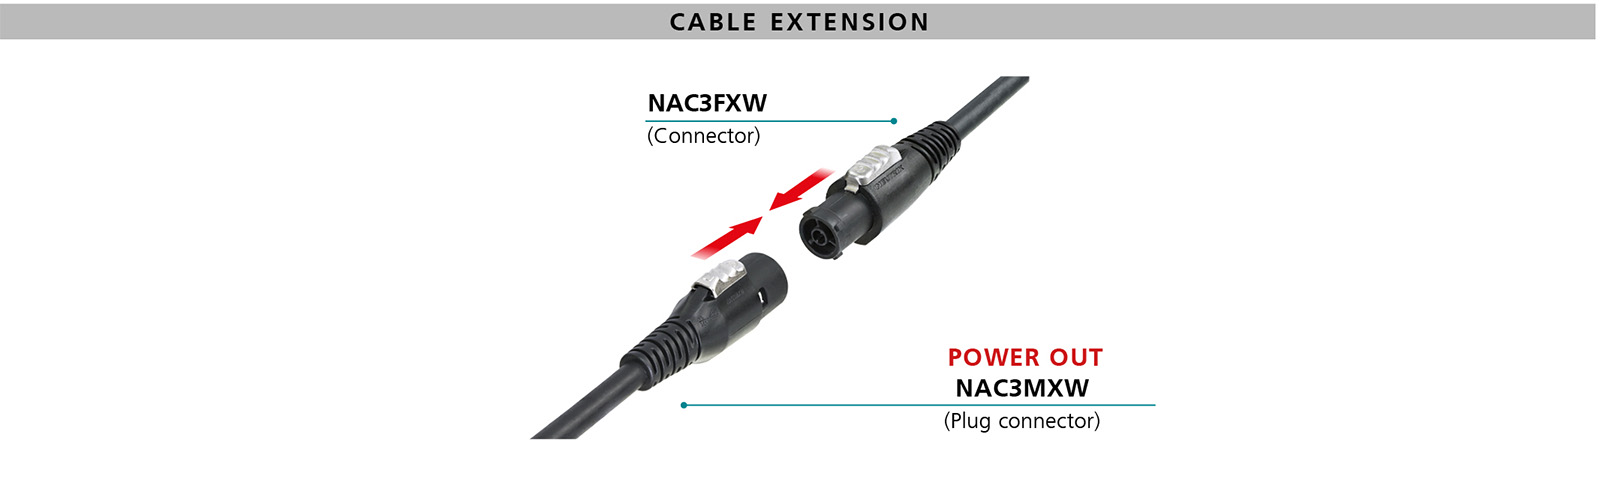 Mating scenario powerCON TRUE 1 cable extension